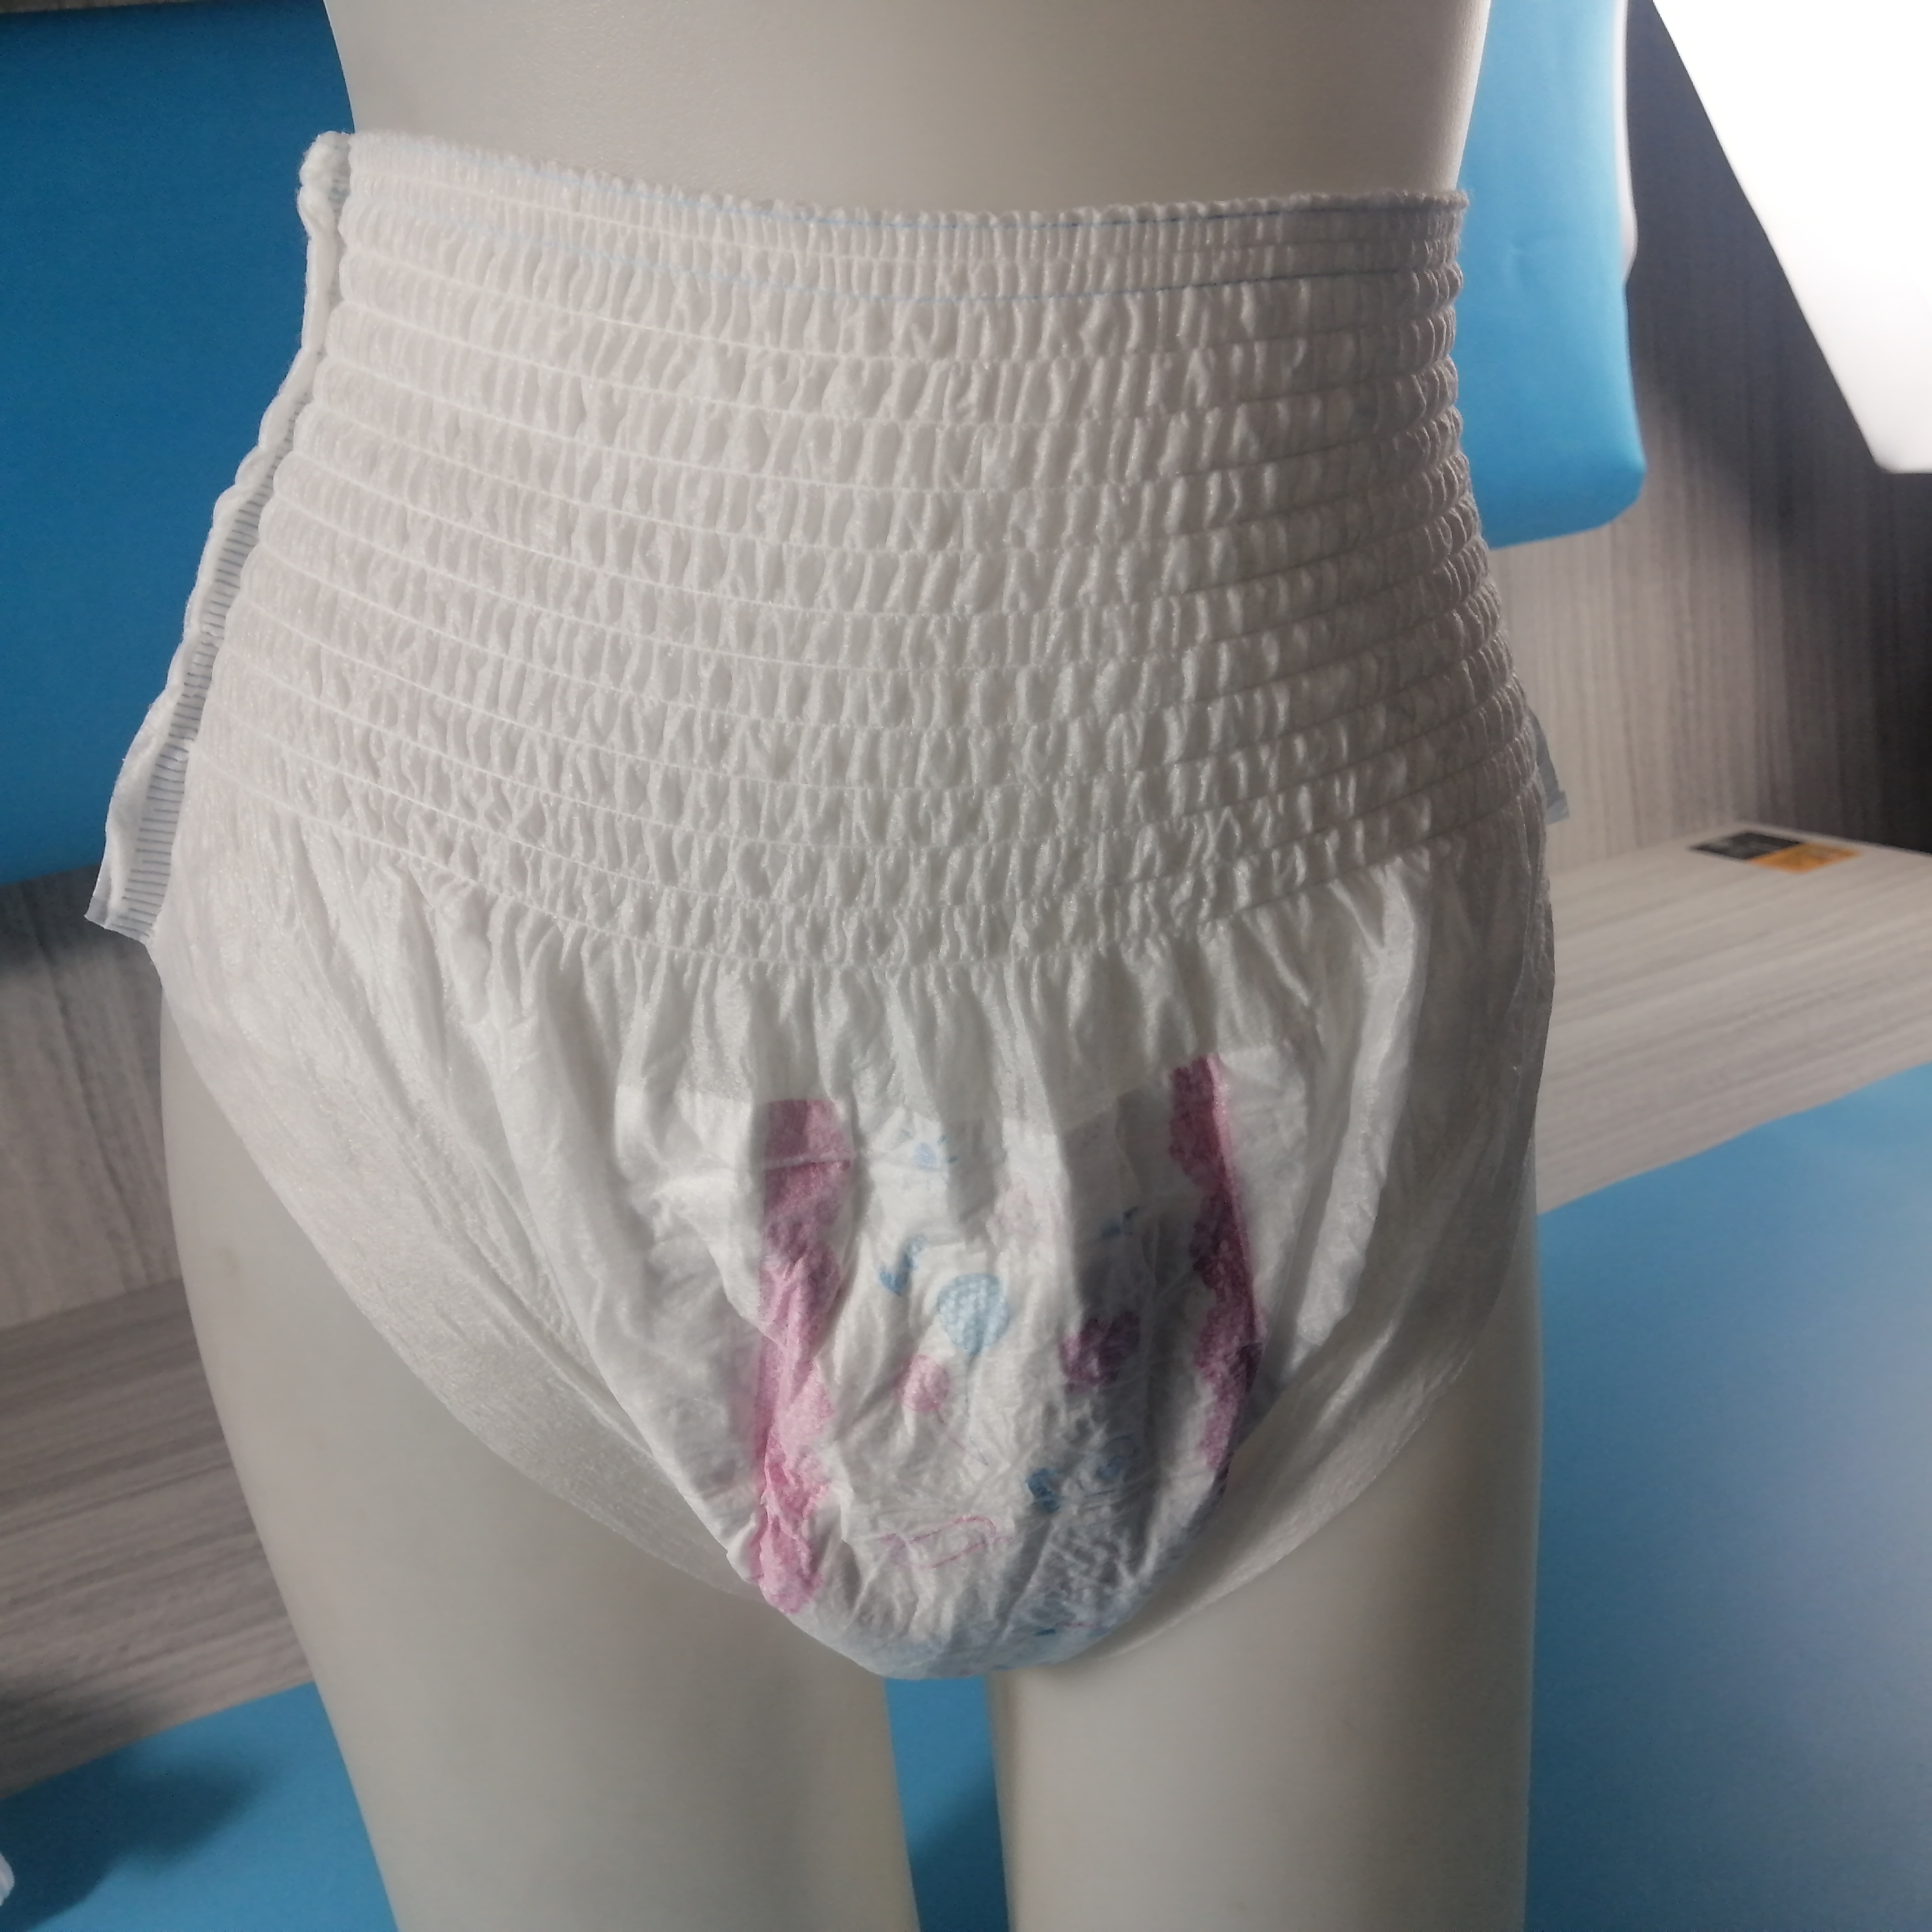 Bas prix meilleure qualité jetable offre spéciale pantalons menstruels respirant sain serviette hygiénique type de culotte pour les femmes